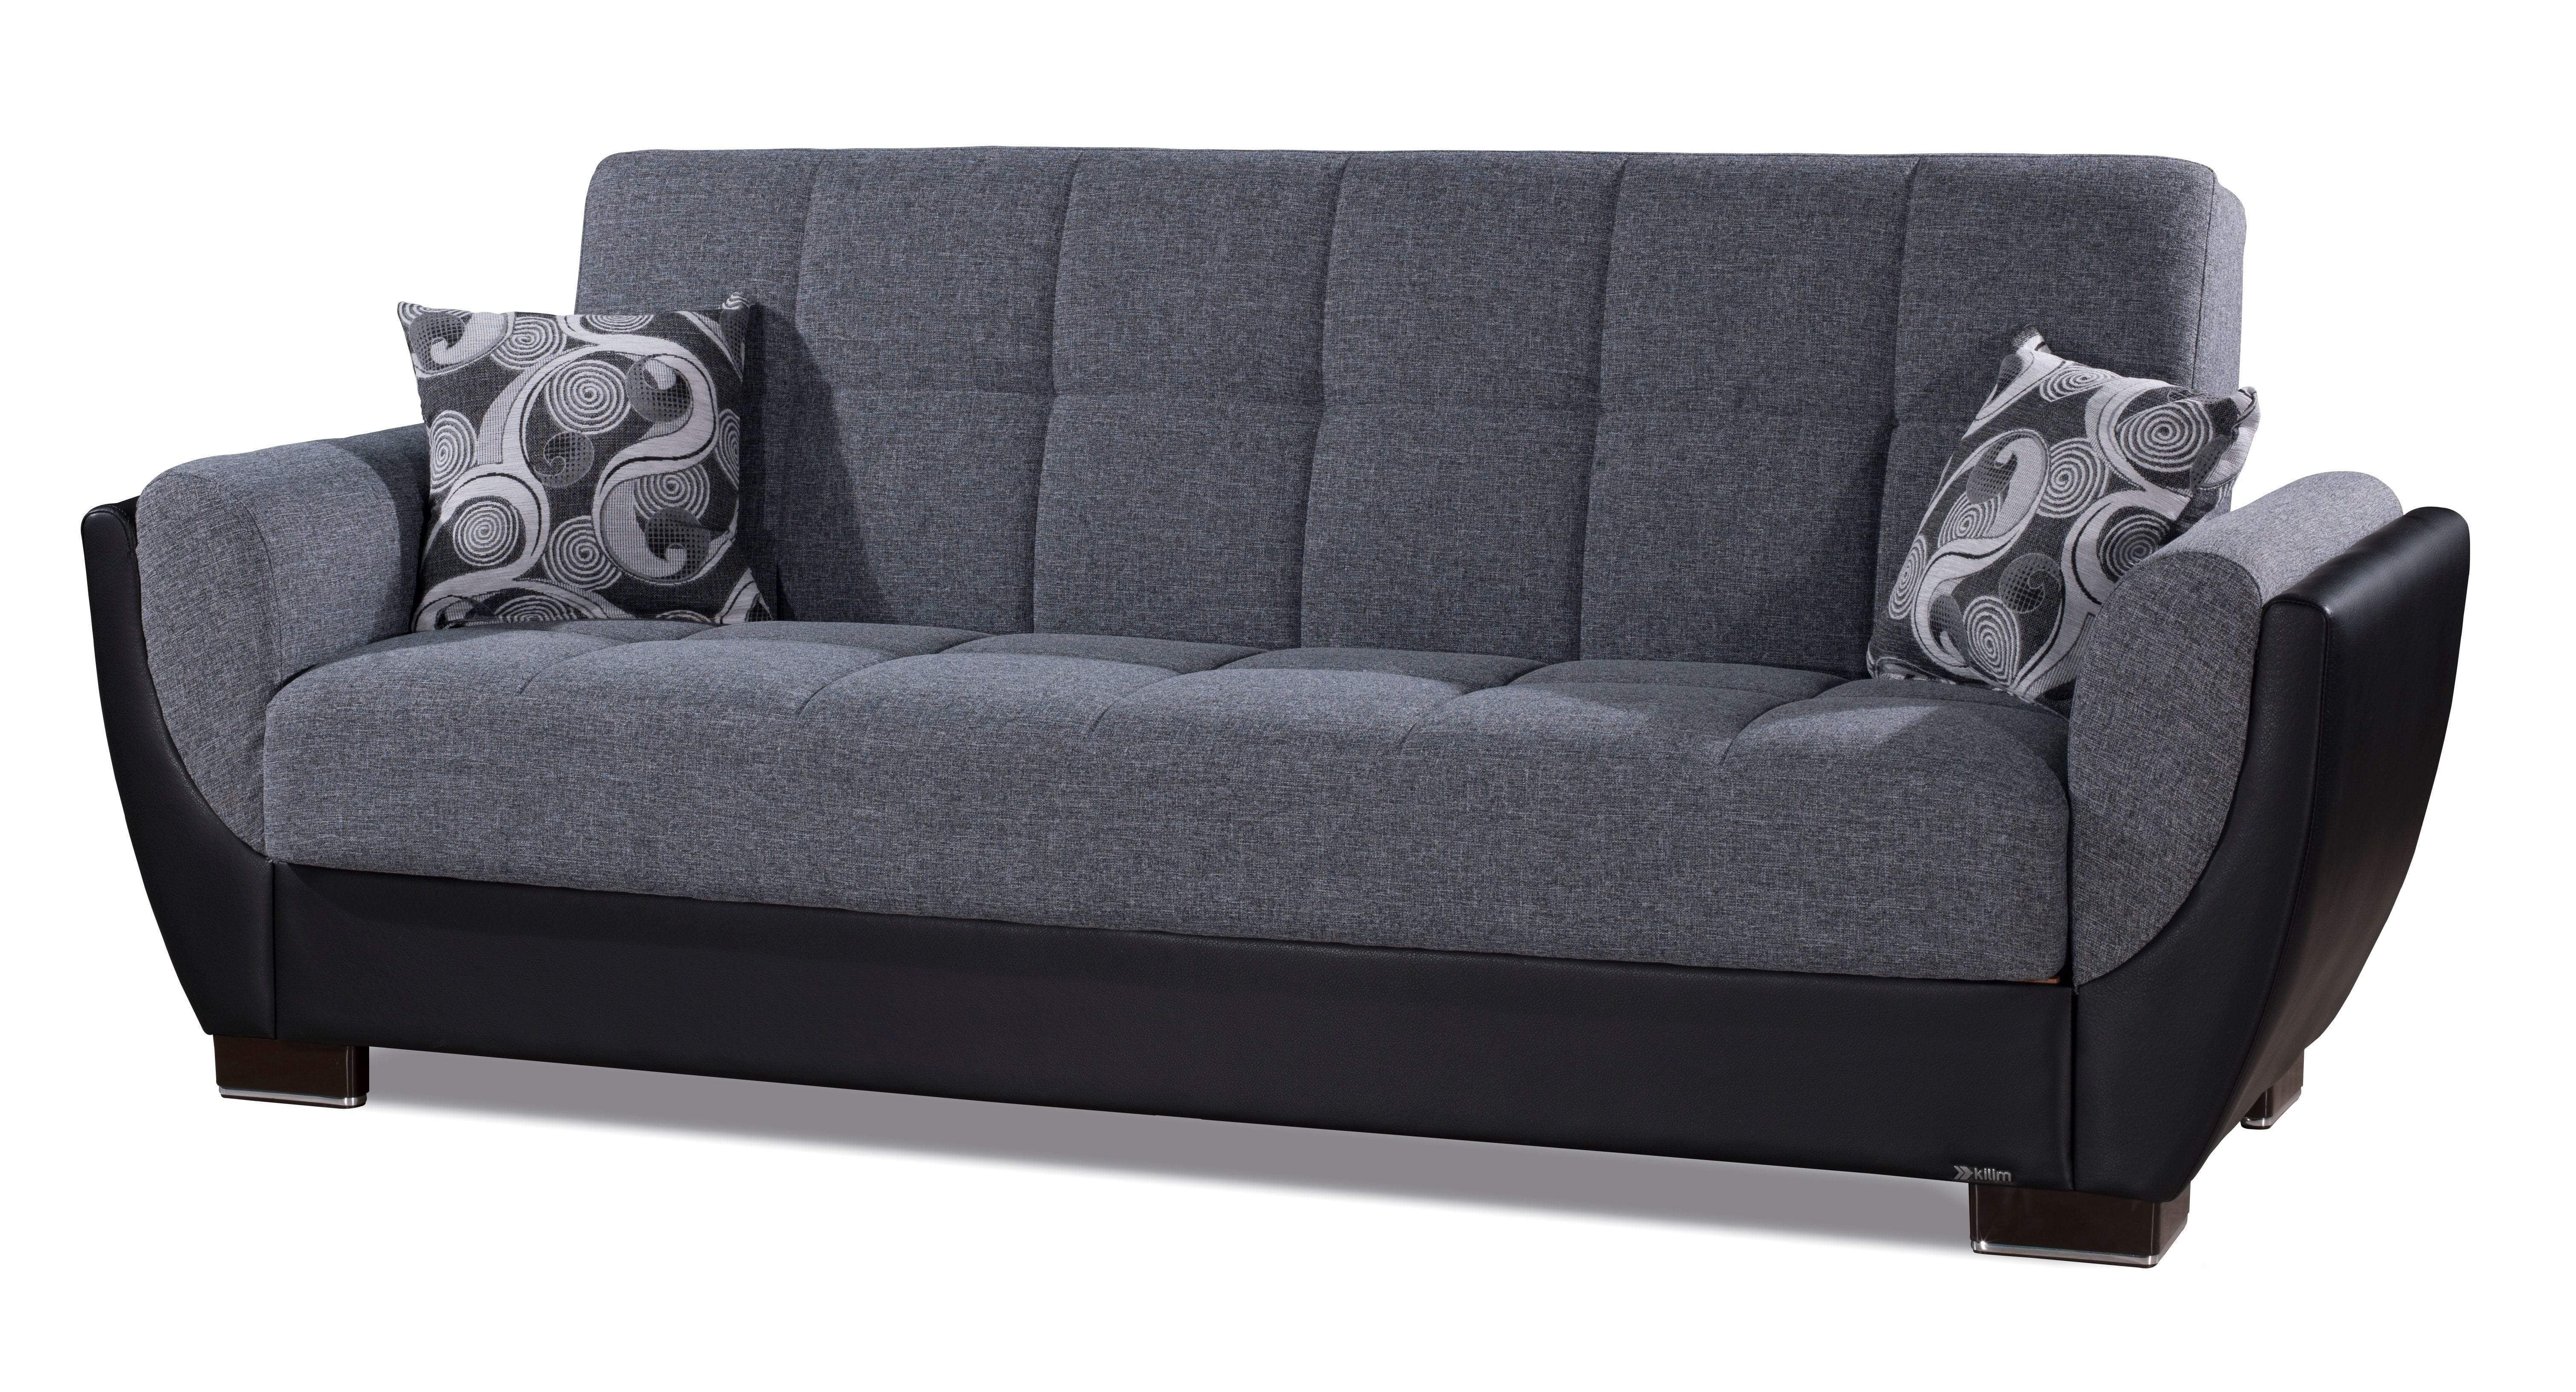 european sofa bed with storage toronto